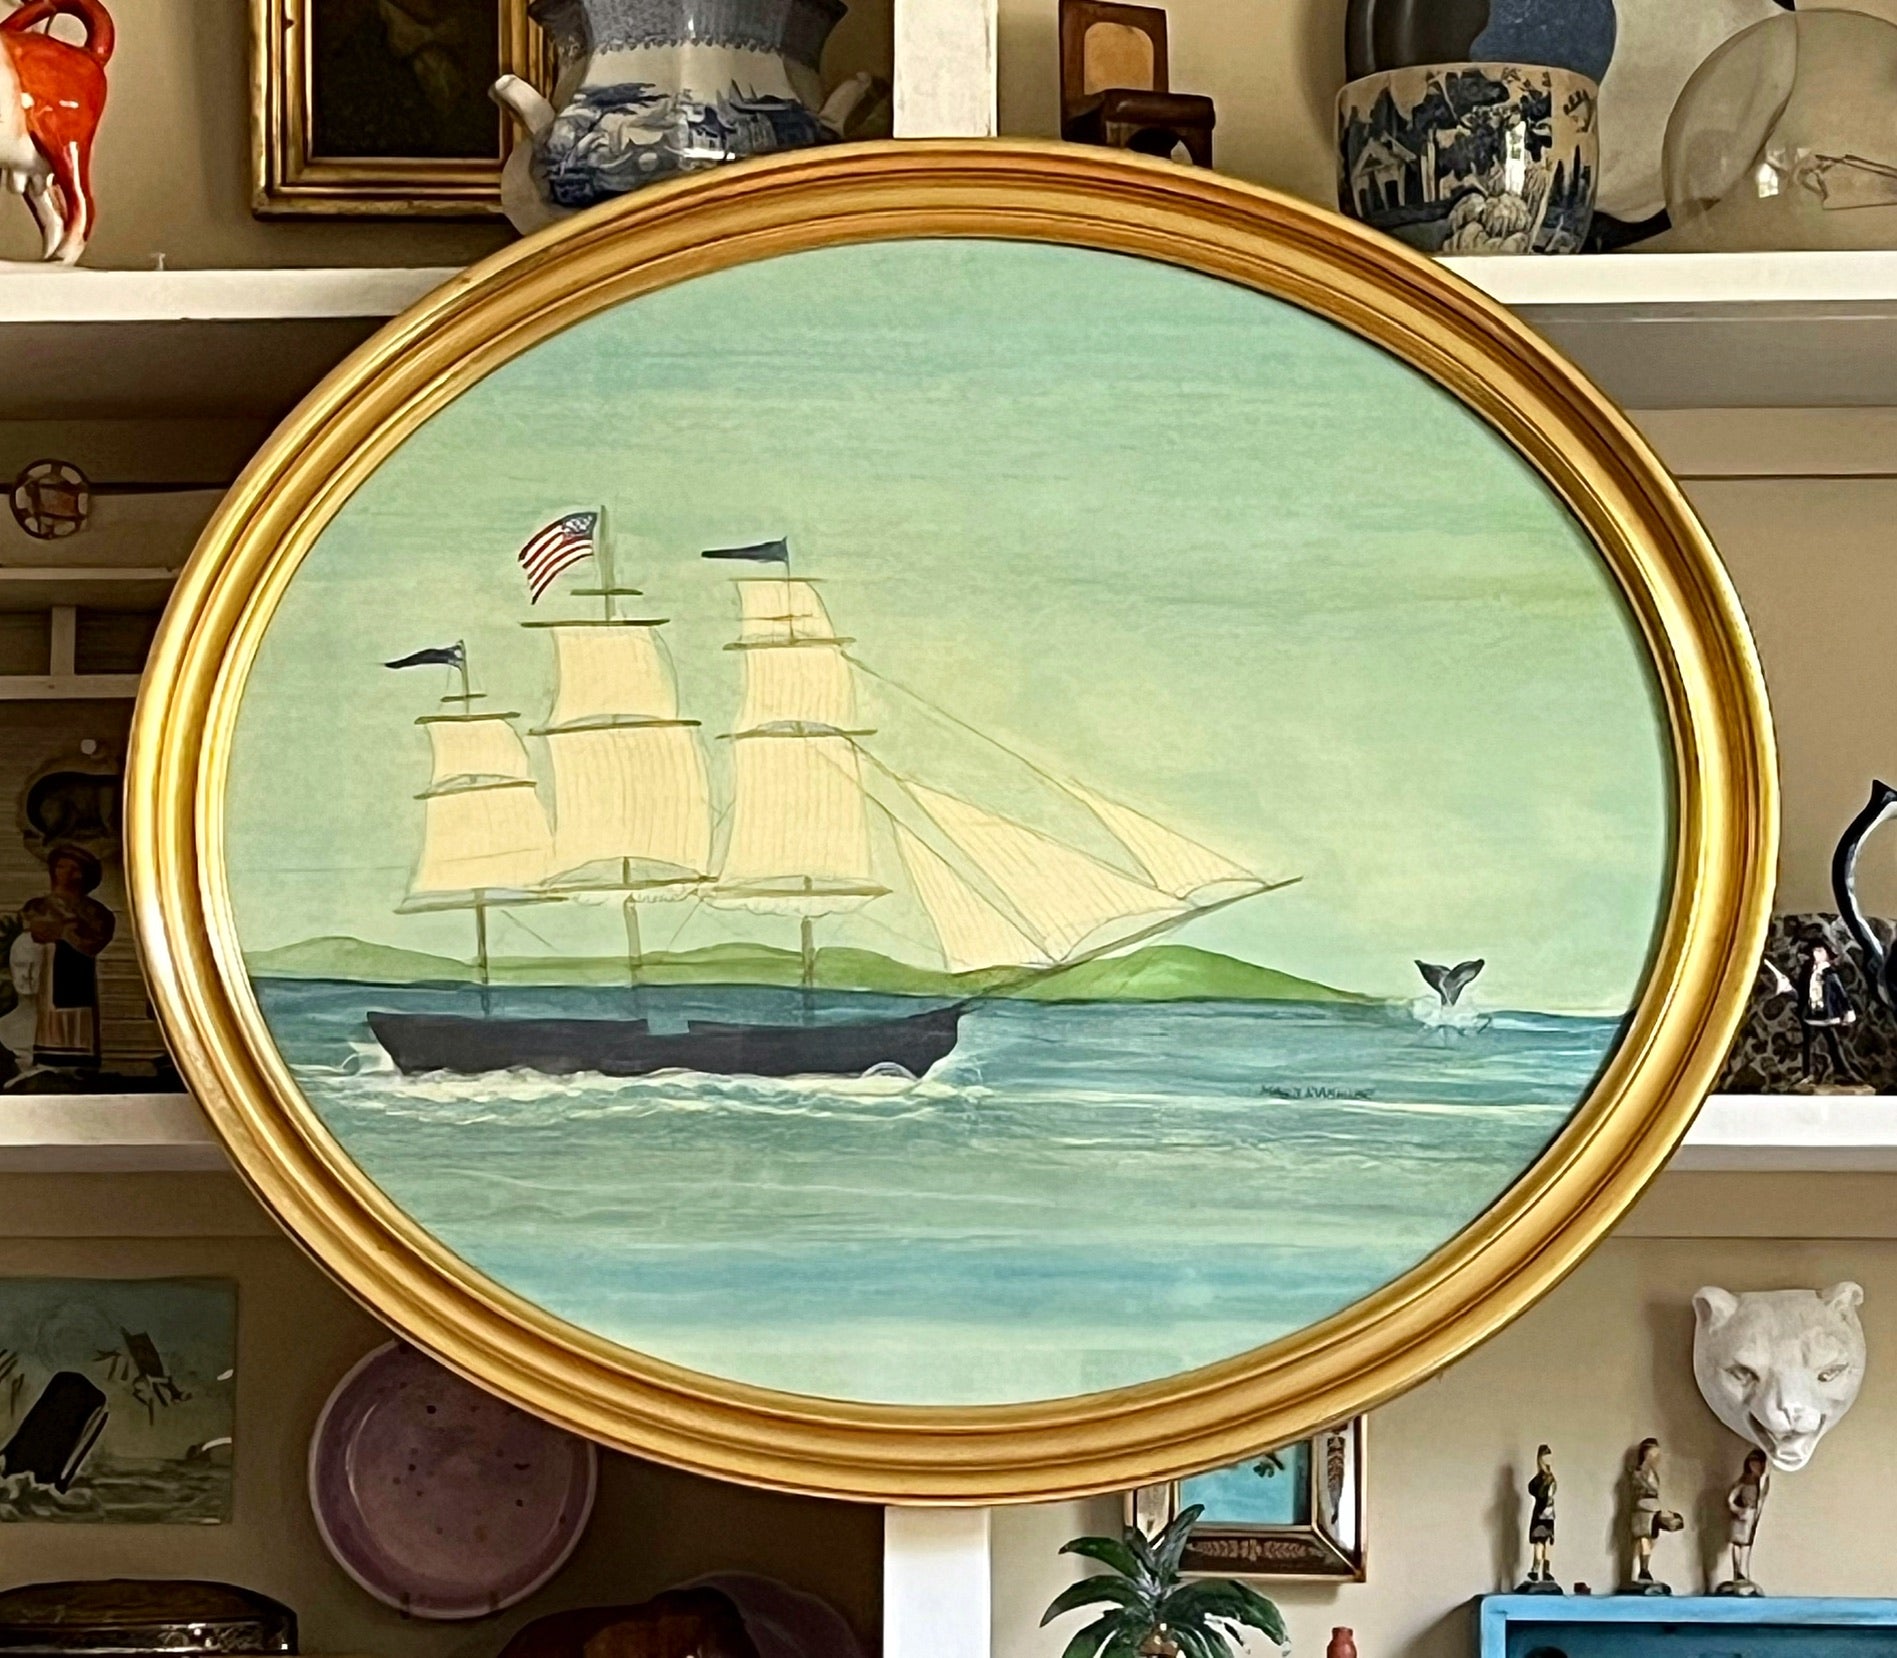 The Ship 'Tuckernuck'